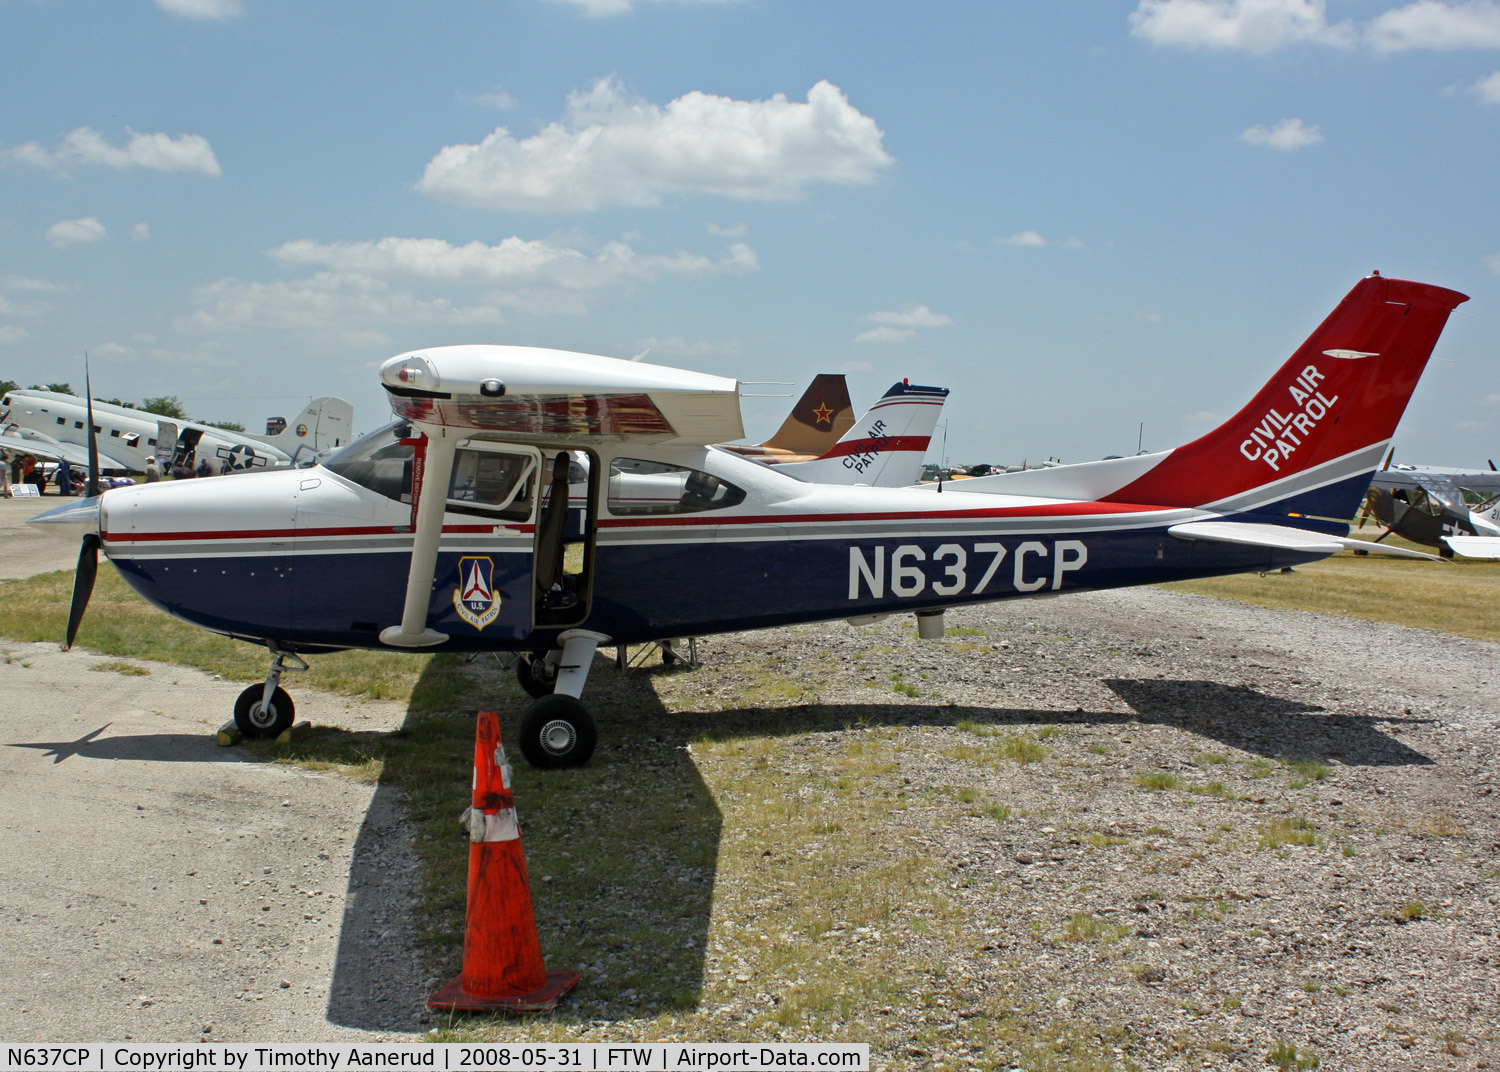 N637CP, 2005 Cessna 182T Skylane C/N 18281532, Cowtown Warbird Roundup 2008, Civil Air Patrol display, 2005 Cessna 182T Skylane, c/n 18281532